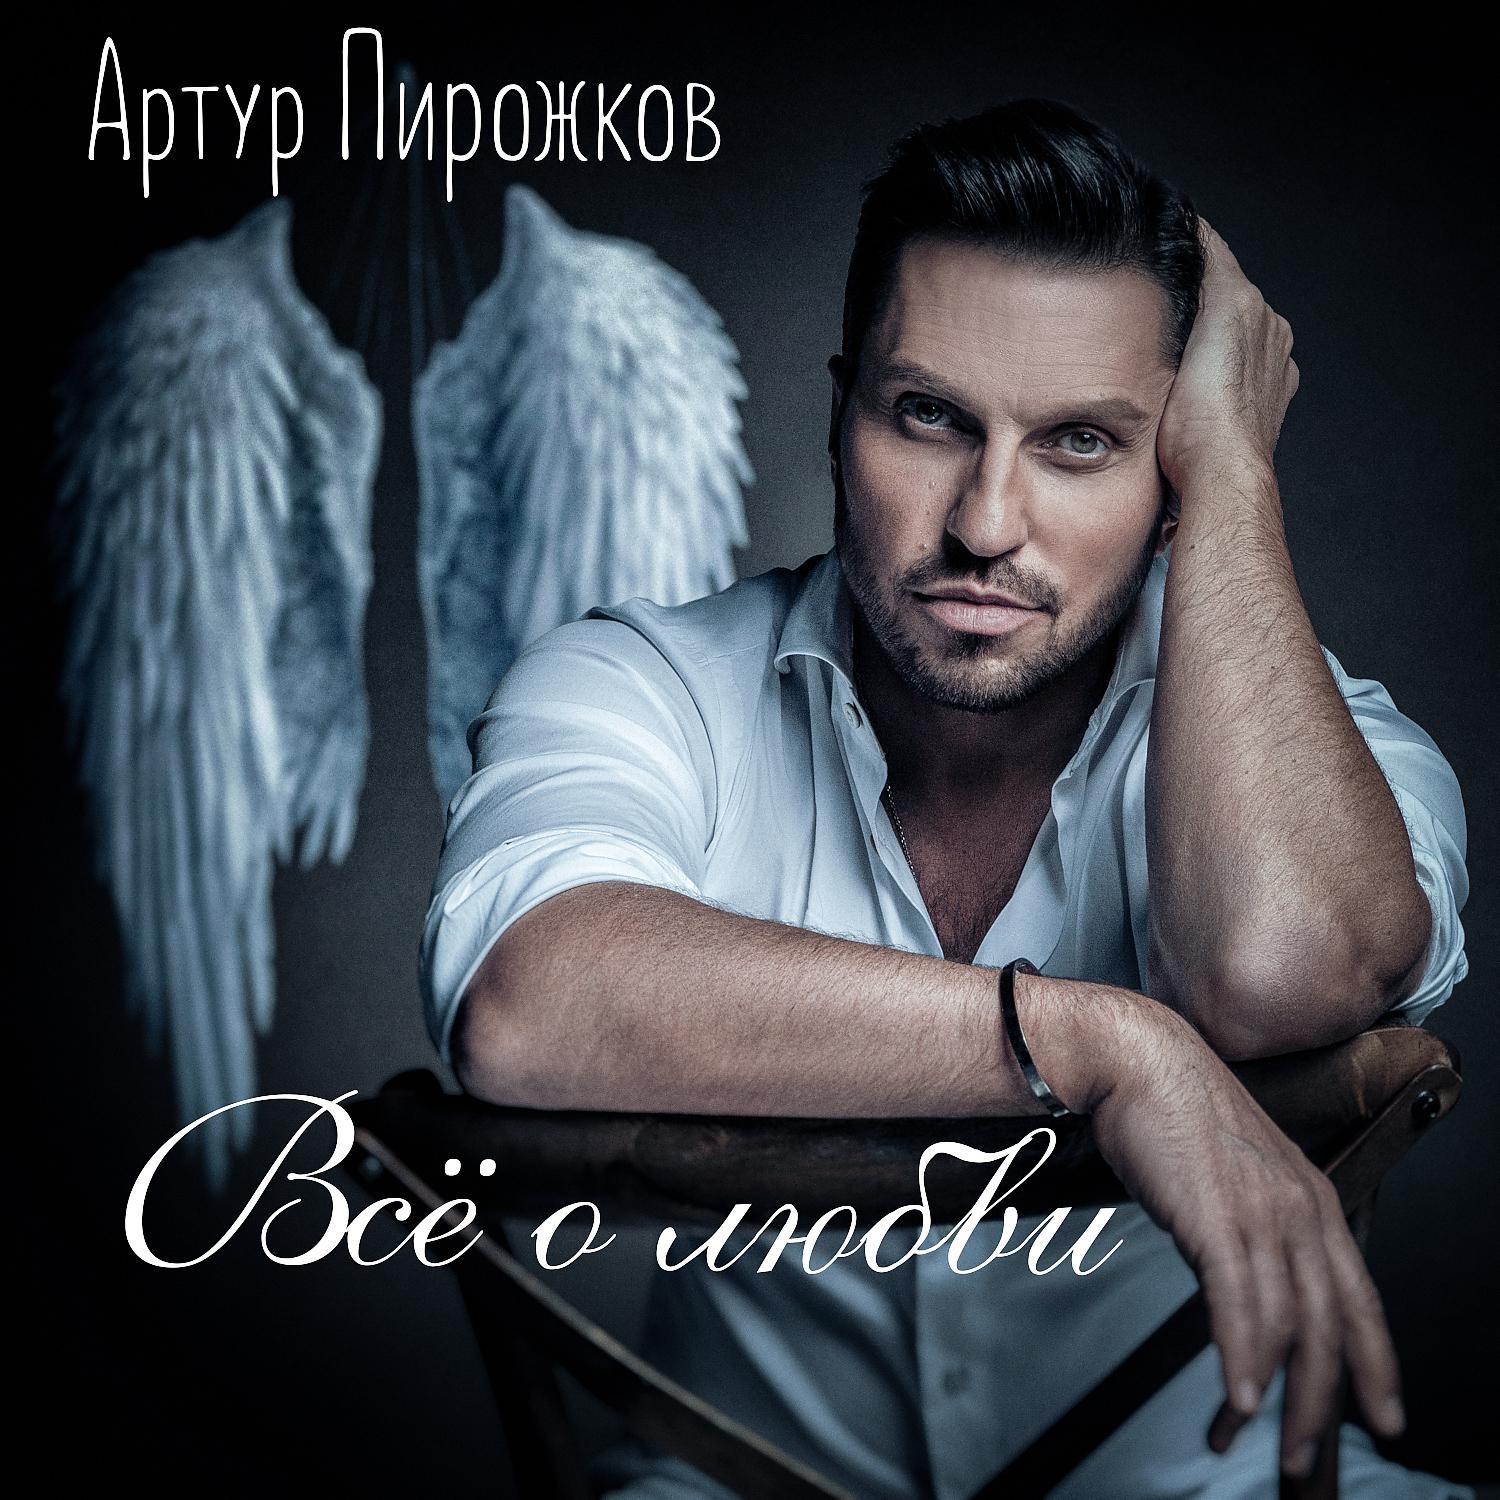 Артур Пирожков - Понарошку (Cover Version) скачать ремикс 